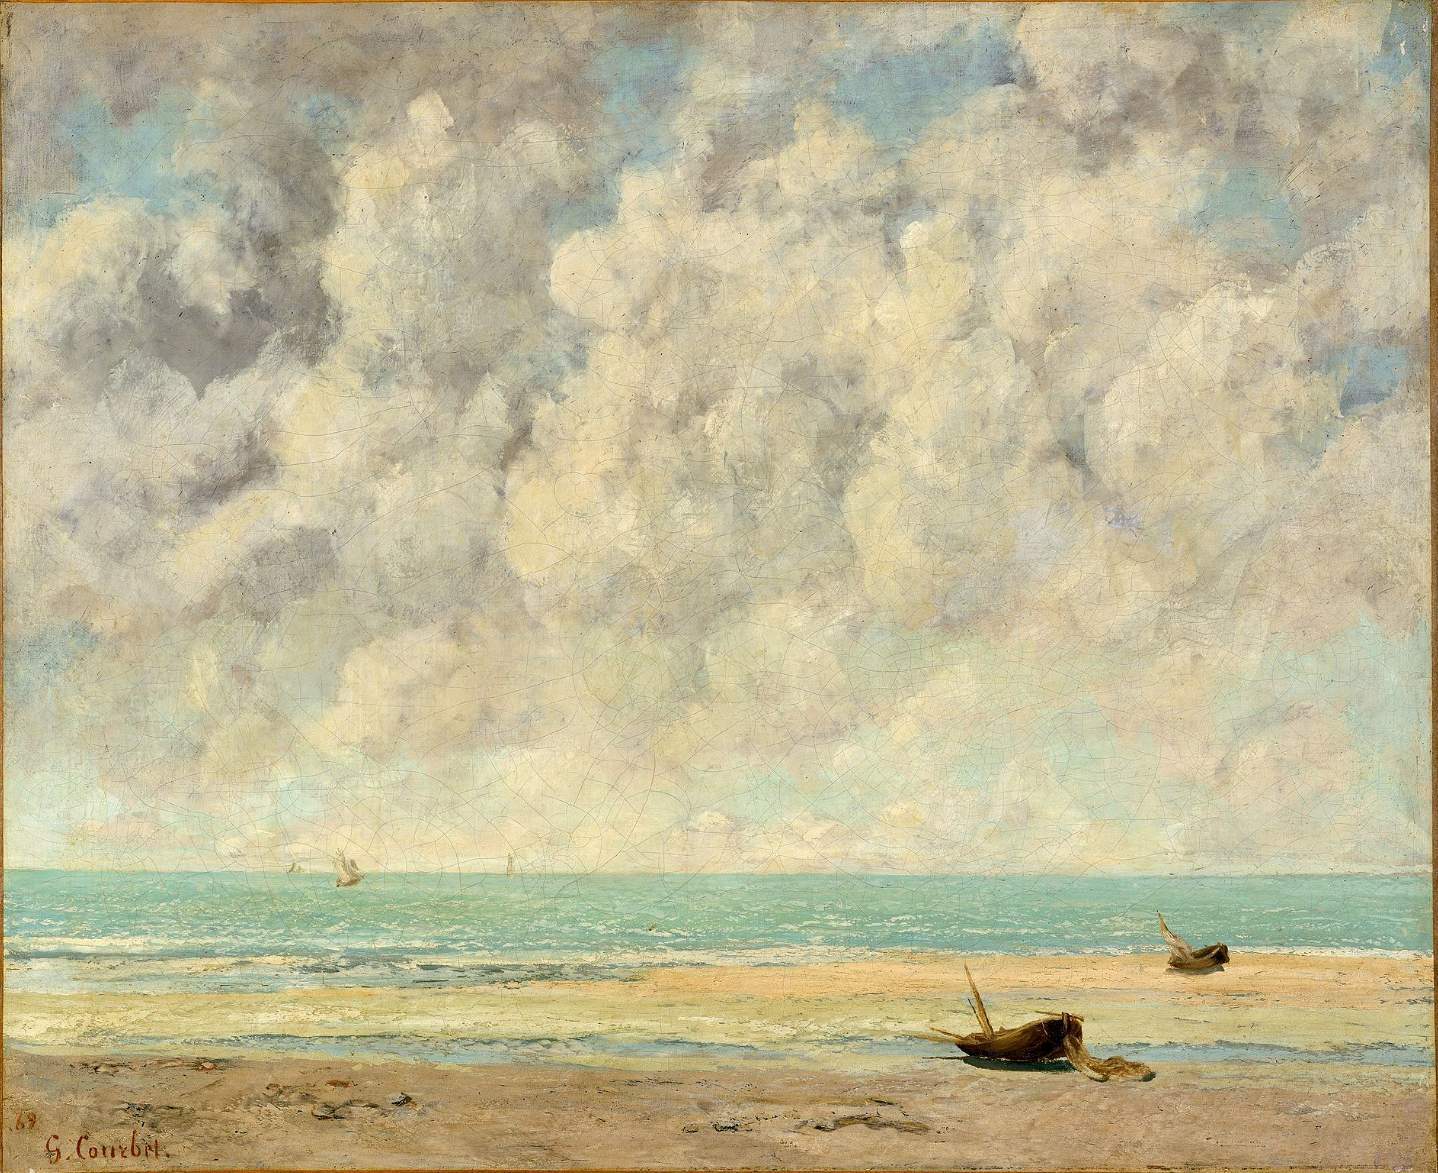 The Calm Sea, 1869, Jean Désiré Gustave Courbet